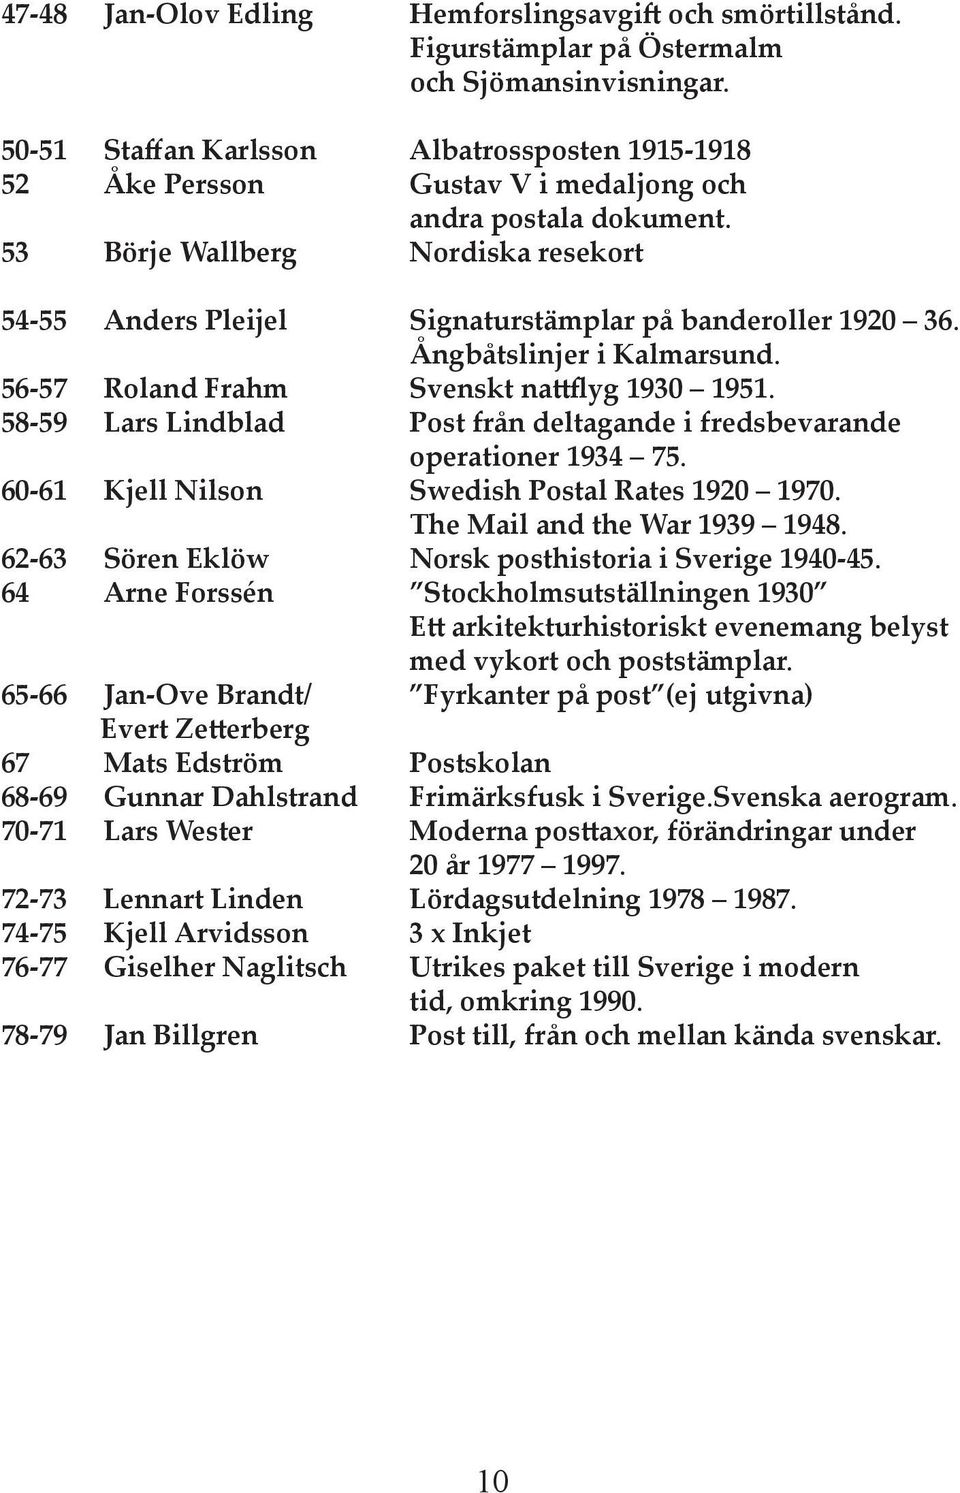 53 Börje Wallberg Nordiska resekort 54-55 Anders Pleĳel Signaturstämplar på banderoller 1920 36. Ångbåtslinjer i Kalmarsund. 56-57 Roland Frahm Svenskt na flyg 1930 1951.